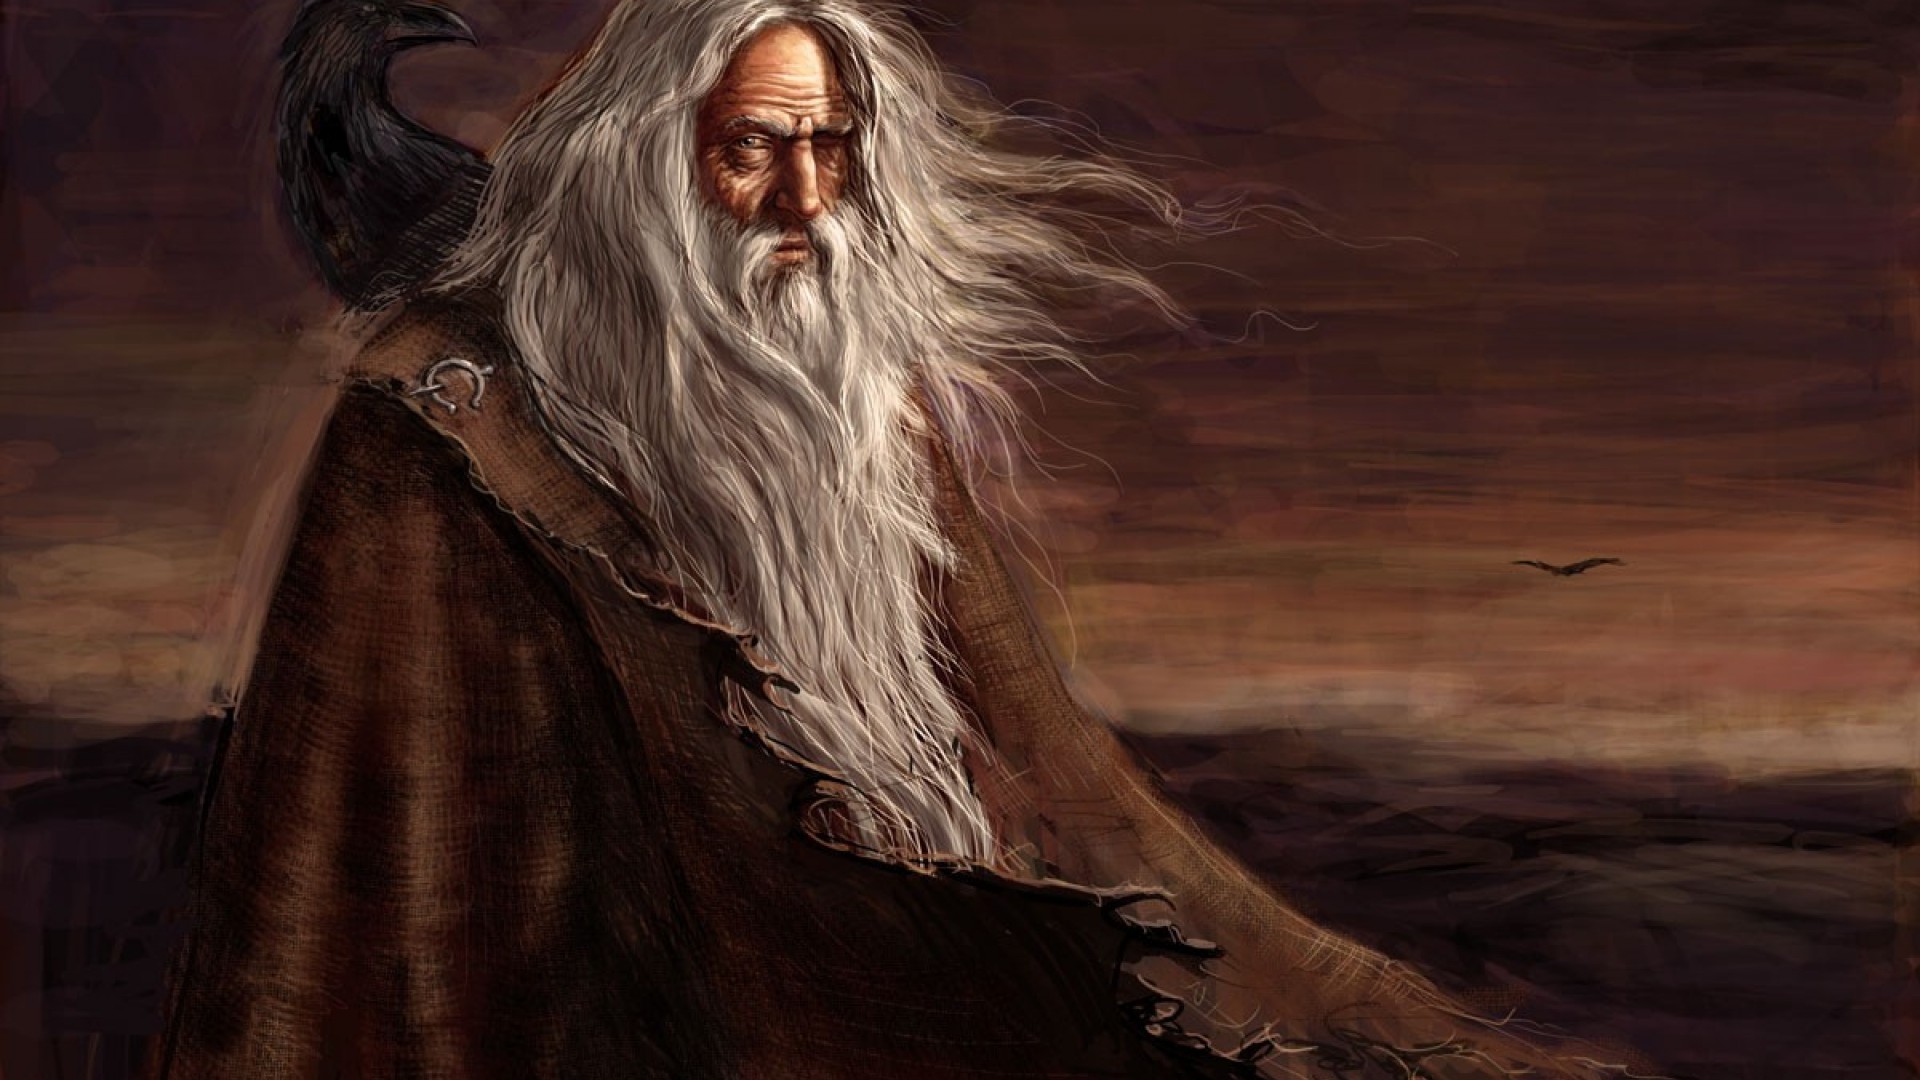 Significado do nome Odin, origem do nome de bebê Odin – Tua Parada